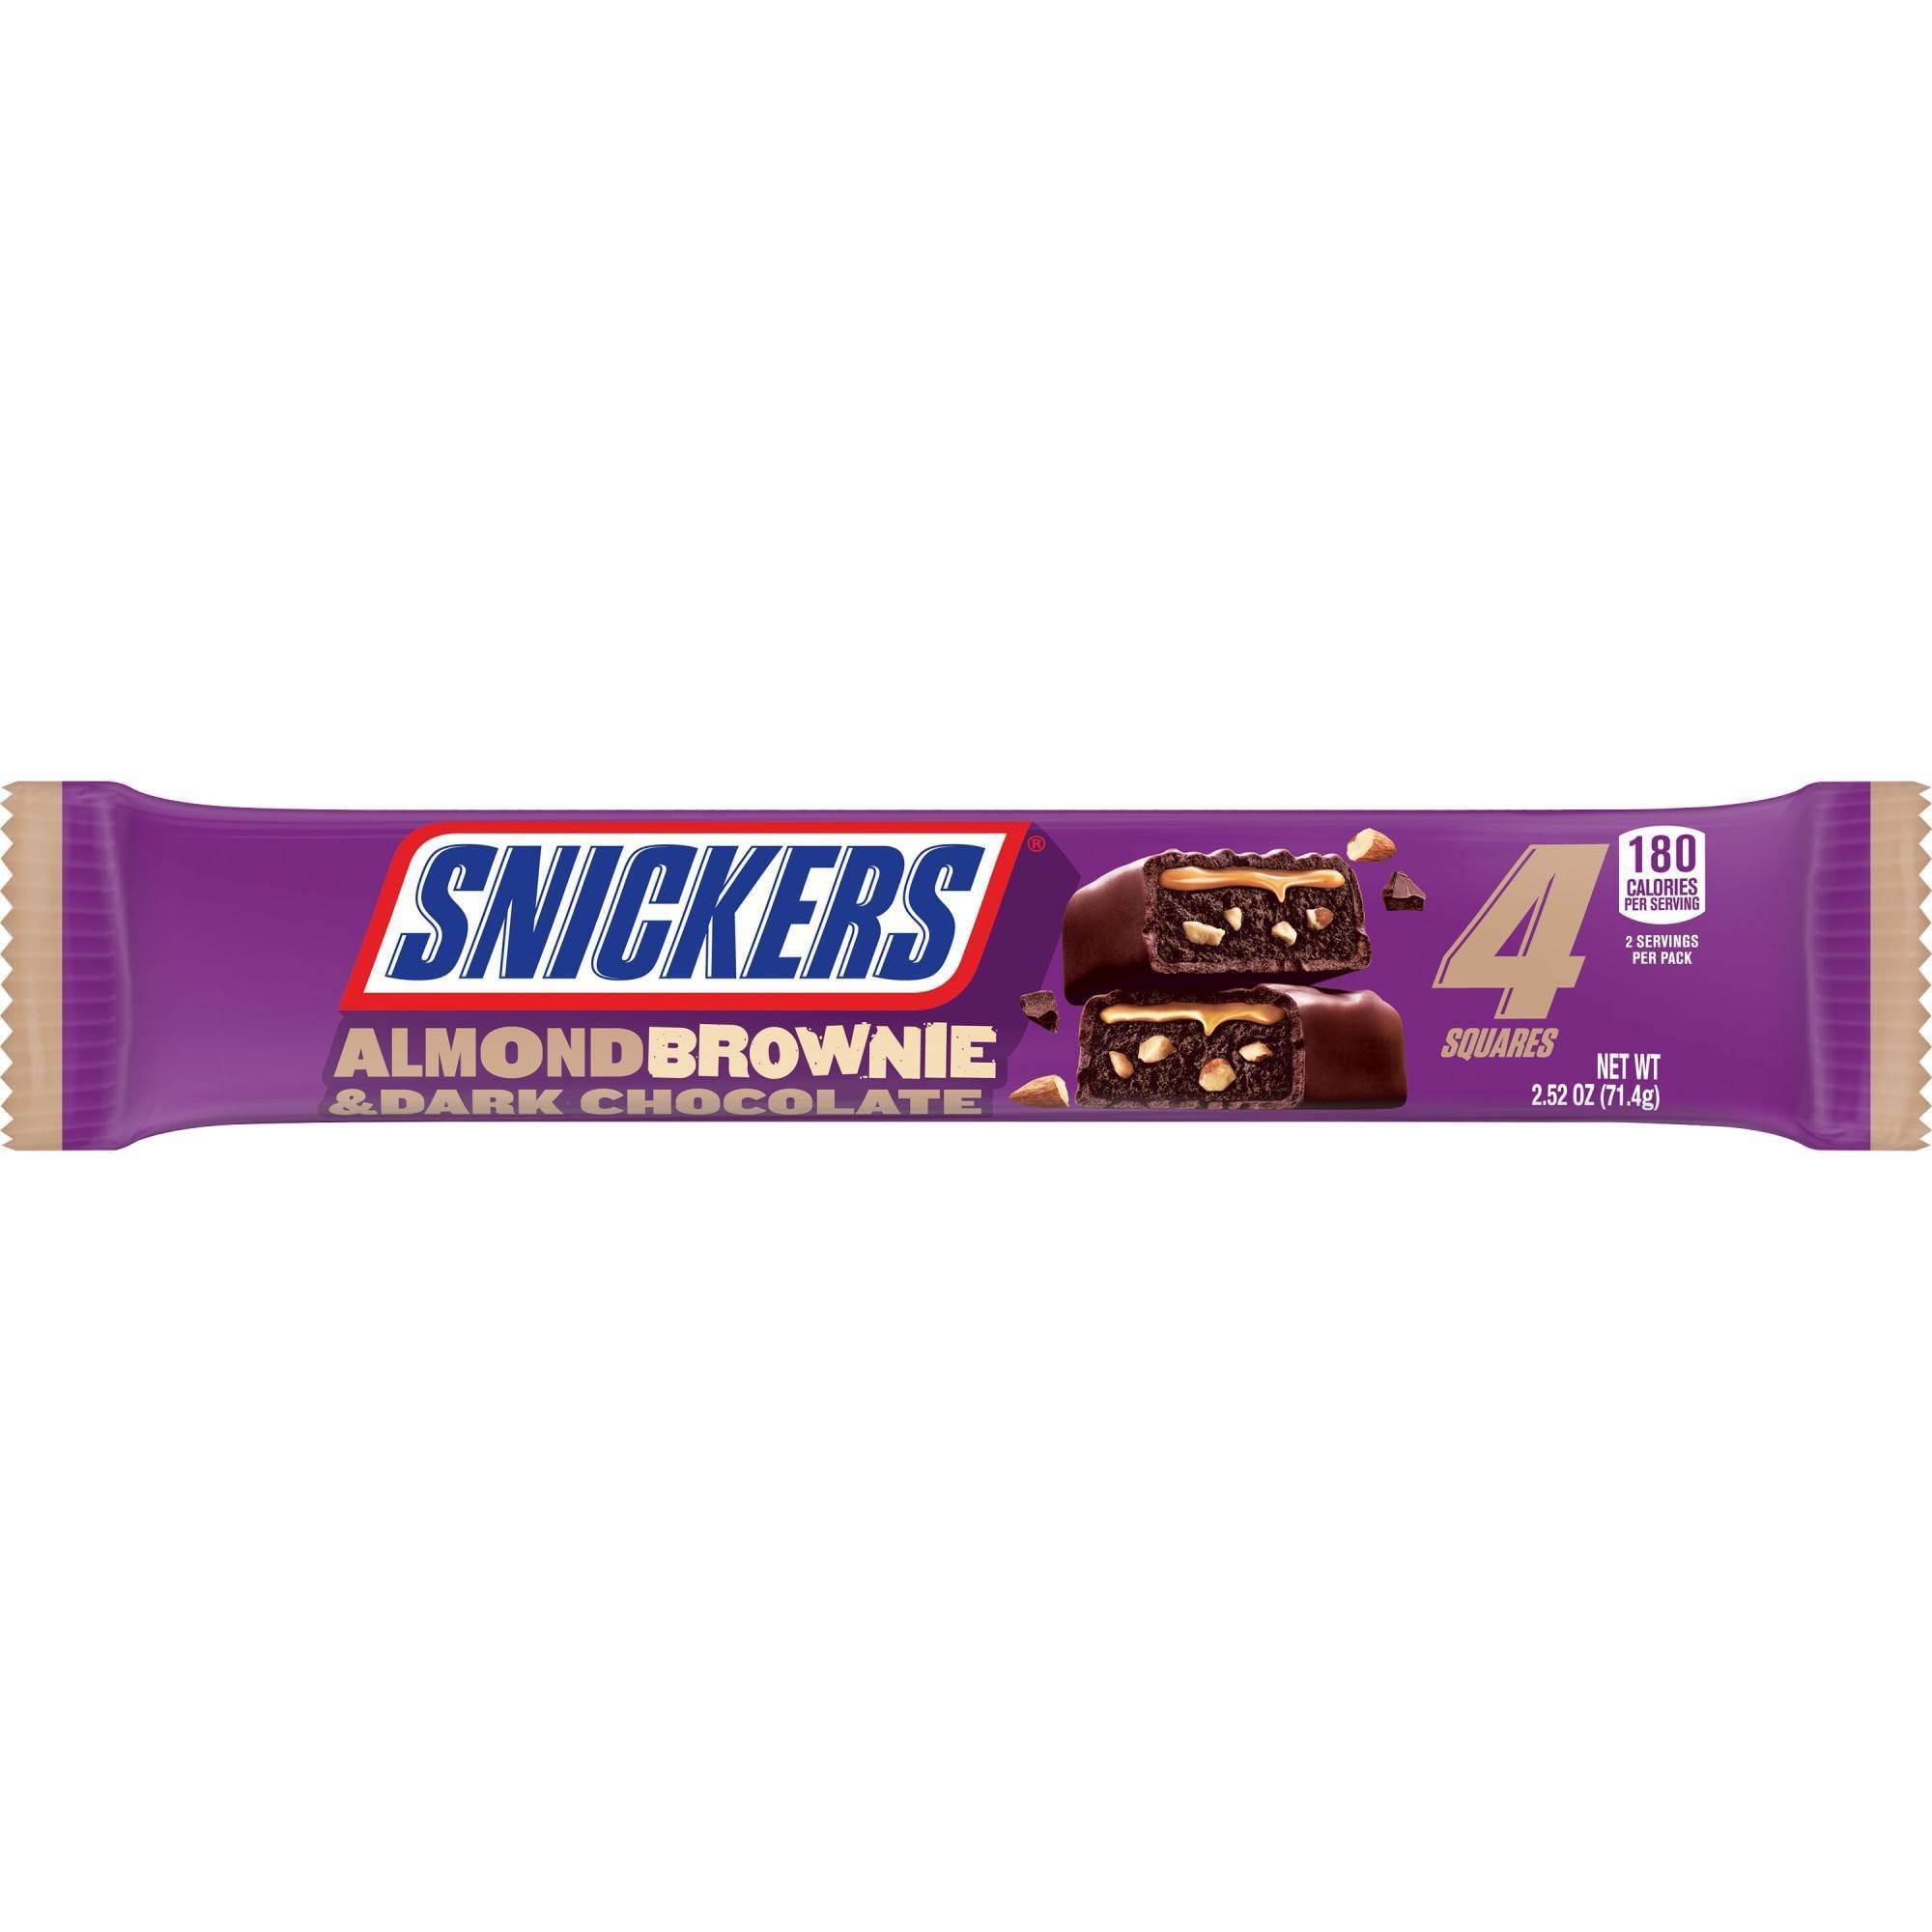 Snickers Brownie Squares, Almond & Dark Chocolate - 4 squares, 2.52 oz